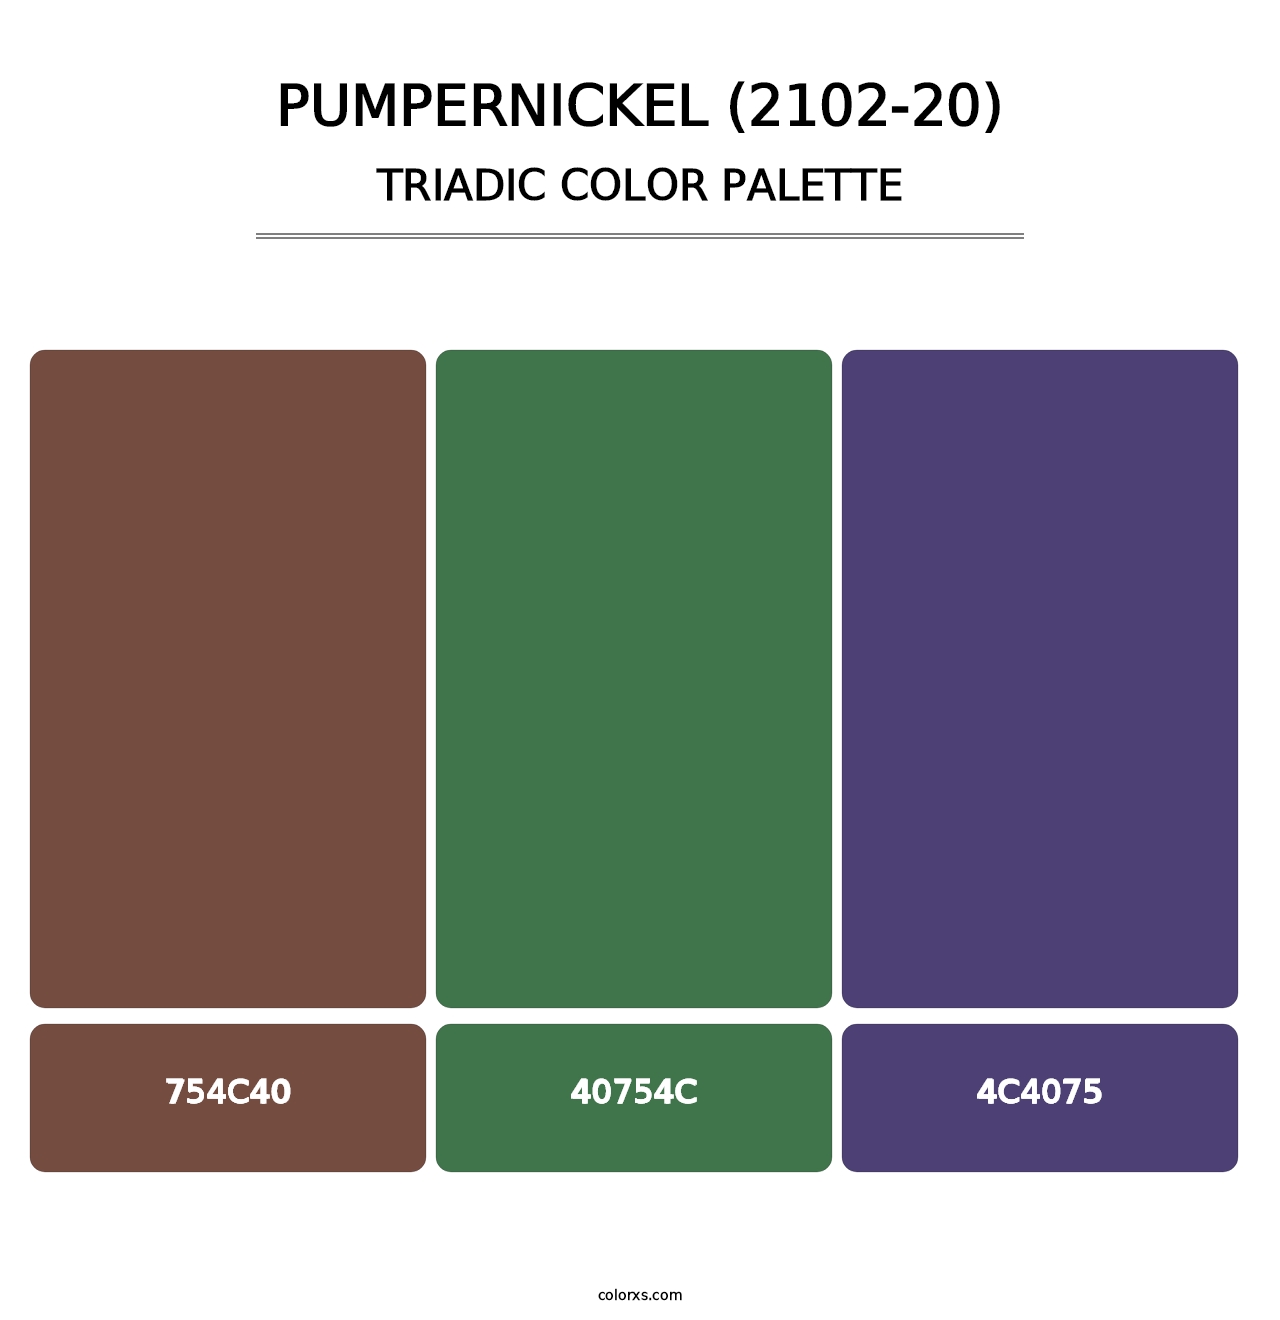 Pumpernickel (2102-20) - Triadic Color Palette